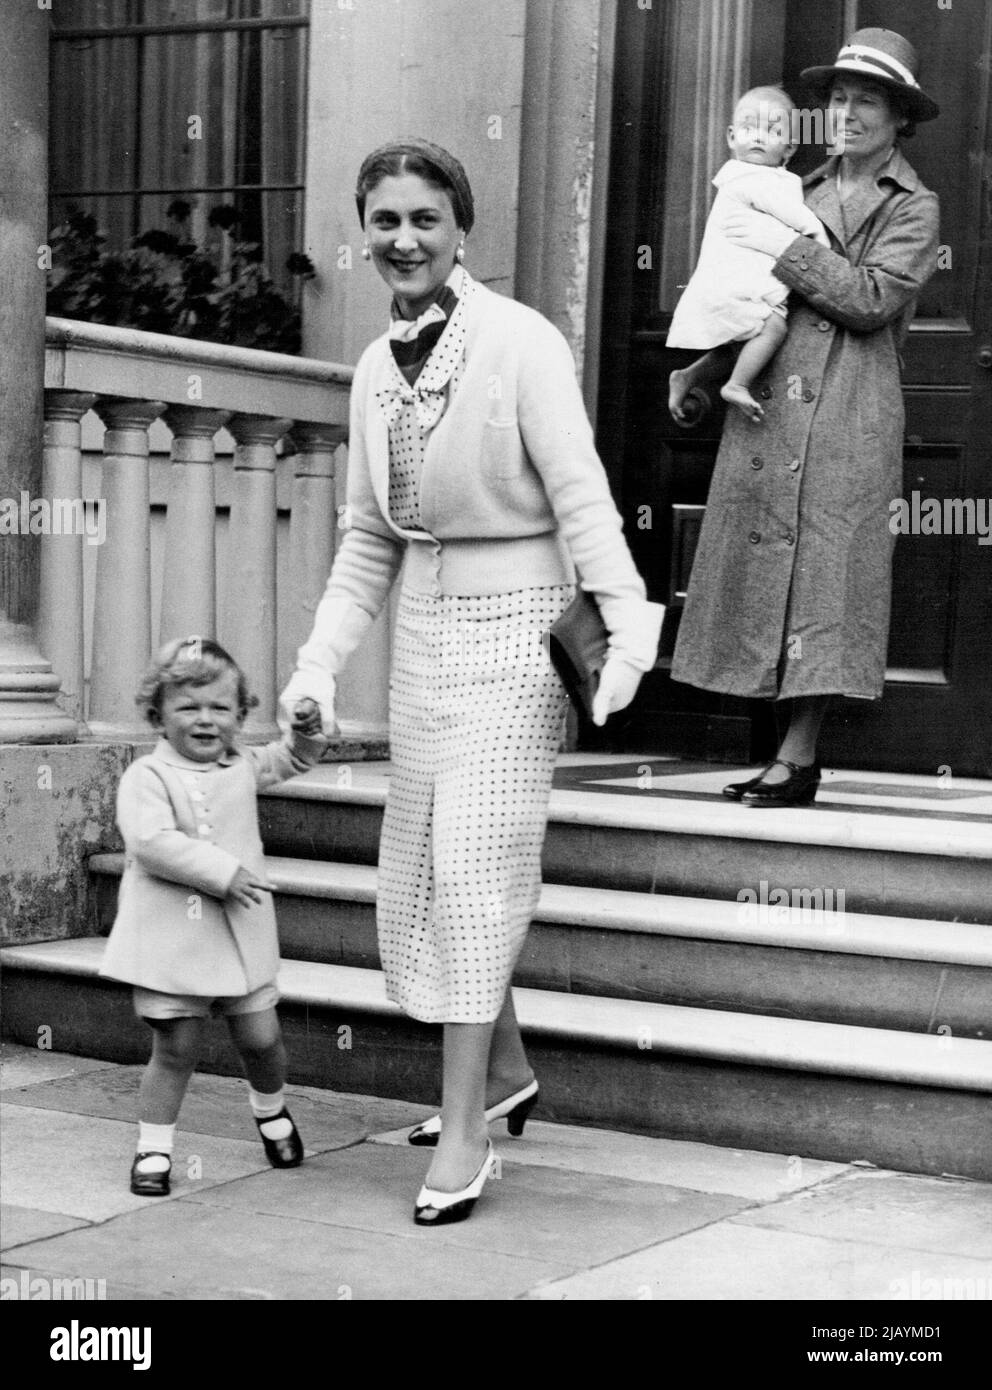 Royal Children Leave for Holiday -- La duquesa de Kent sosteniendo el brazo del Príncipe Eduardo, siendo seguida por su hija, la Princesa Alexandra, dejando Belgrave Square, Londres, esta tarde. La duquesa de Kent, acompañada por sus hijos, salió de Londres esta tarde para unas vacaciones en Sandwich. 26 de julio de 1937. (Foto de Topical Press). Foto de stock